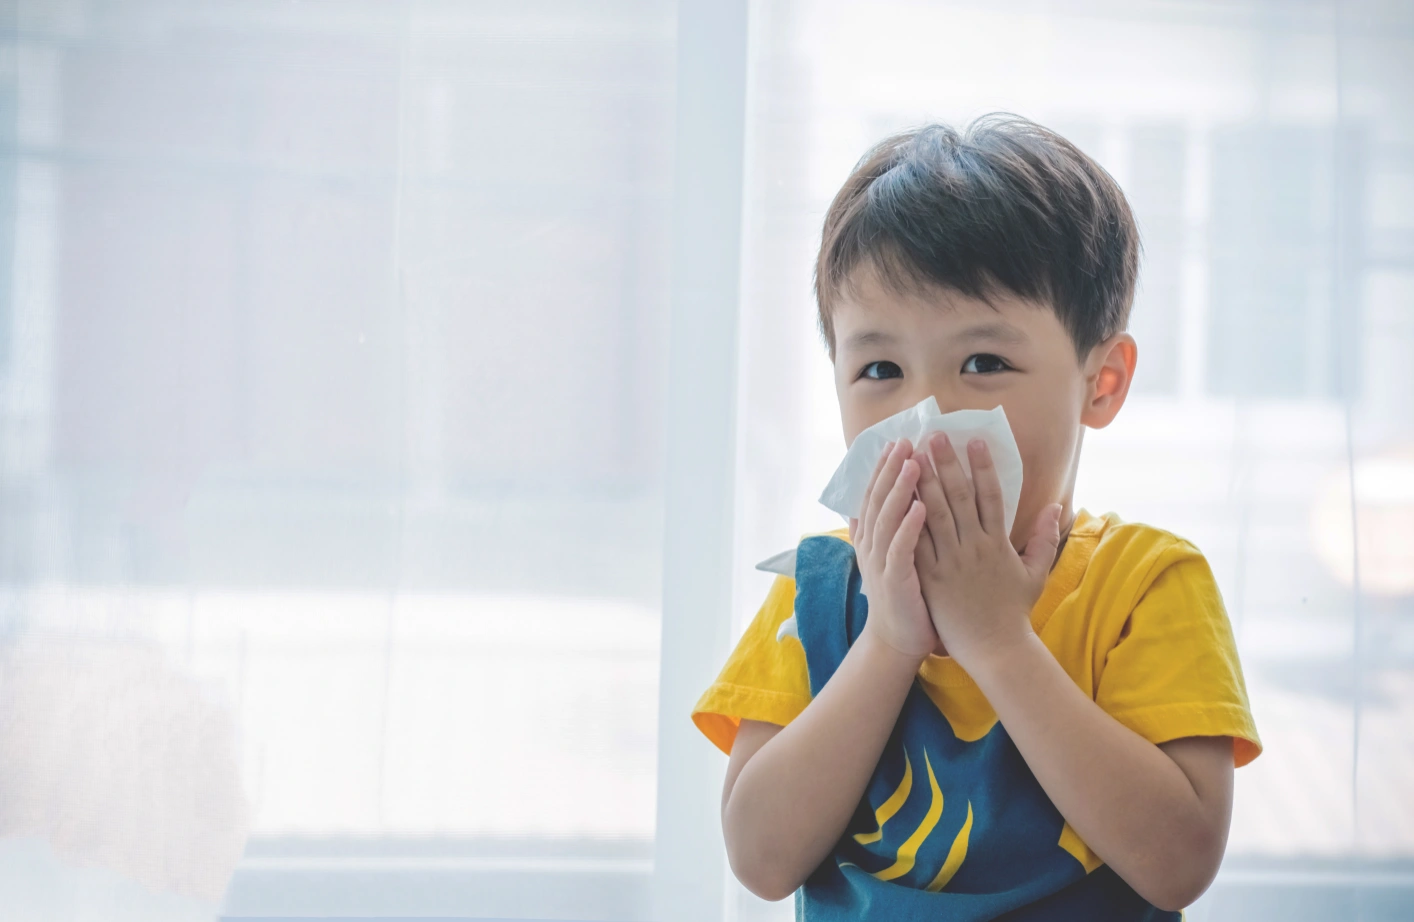 Mampu mengenali jenis batuk yang disebabkan oleh alergi akan memudahkan Ibu dalam memberikan penanganan yang tepat bagi si Kecil.